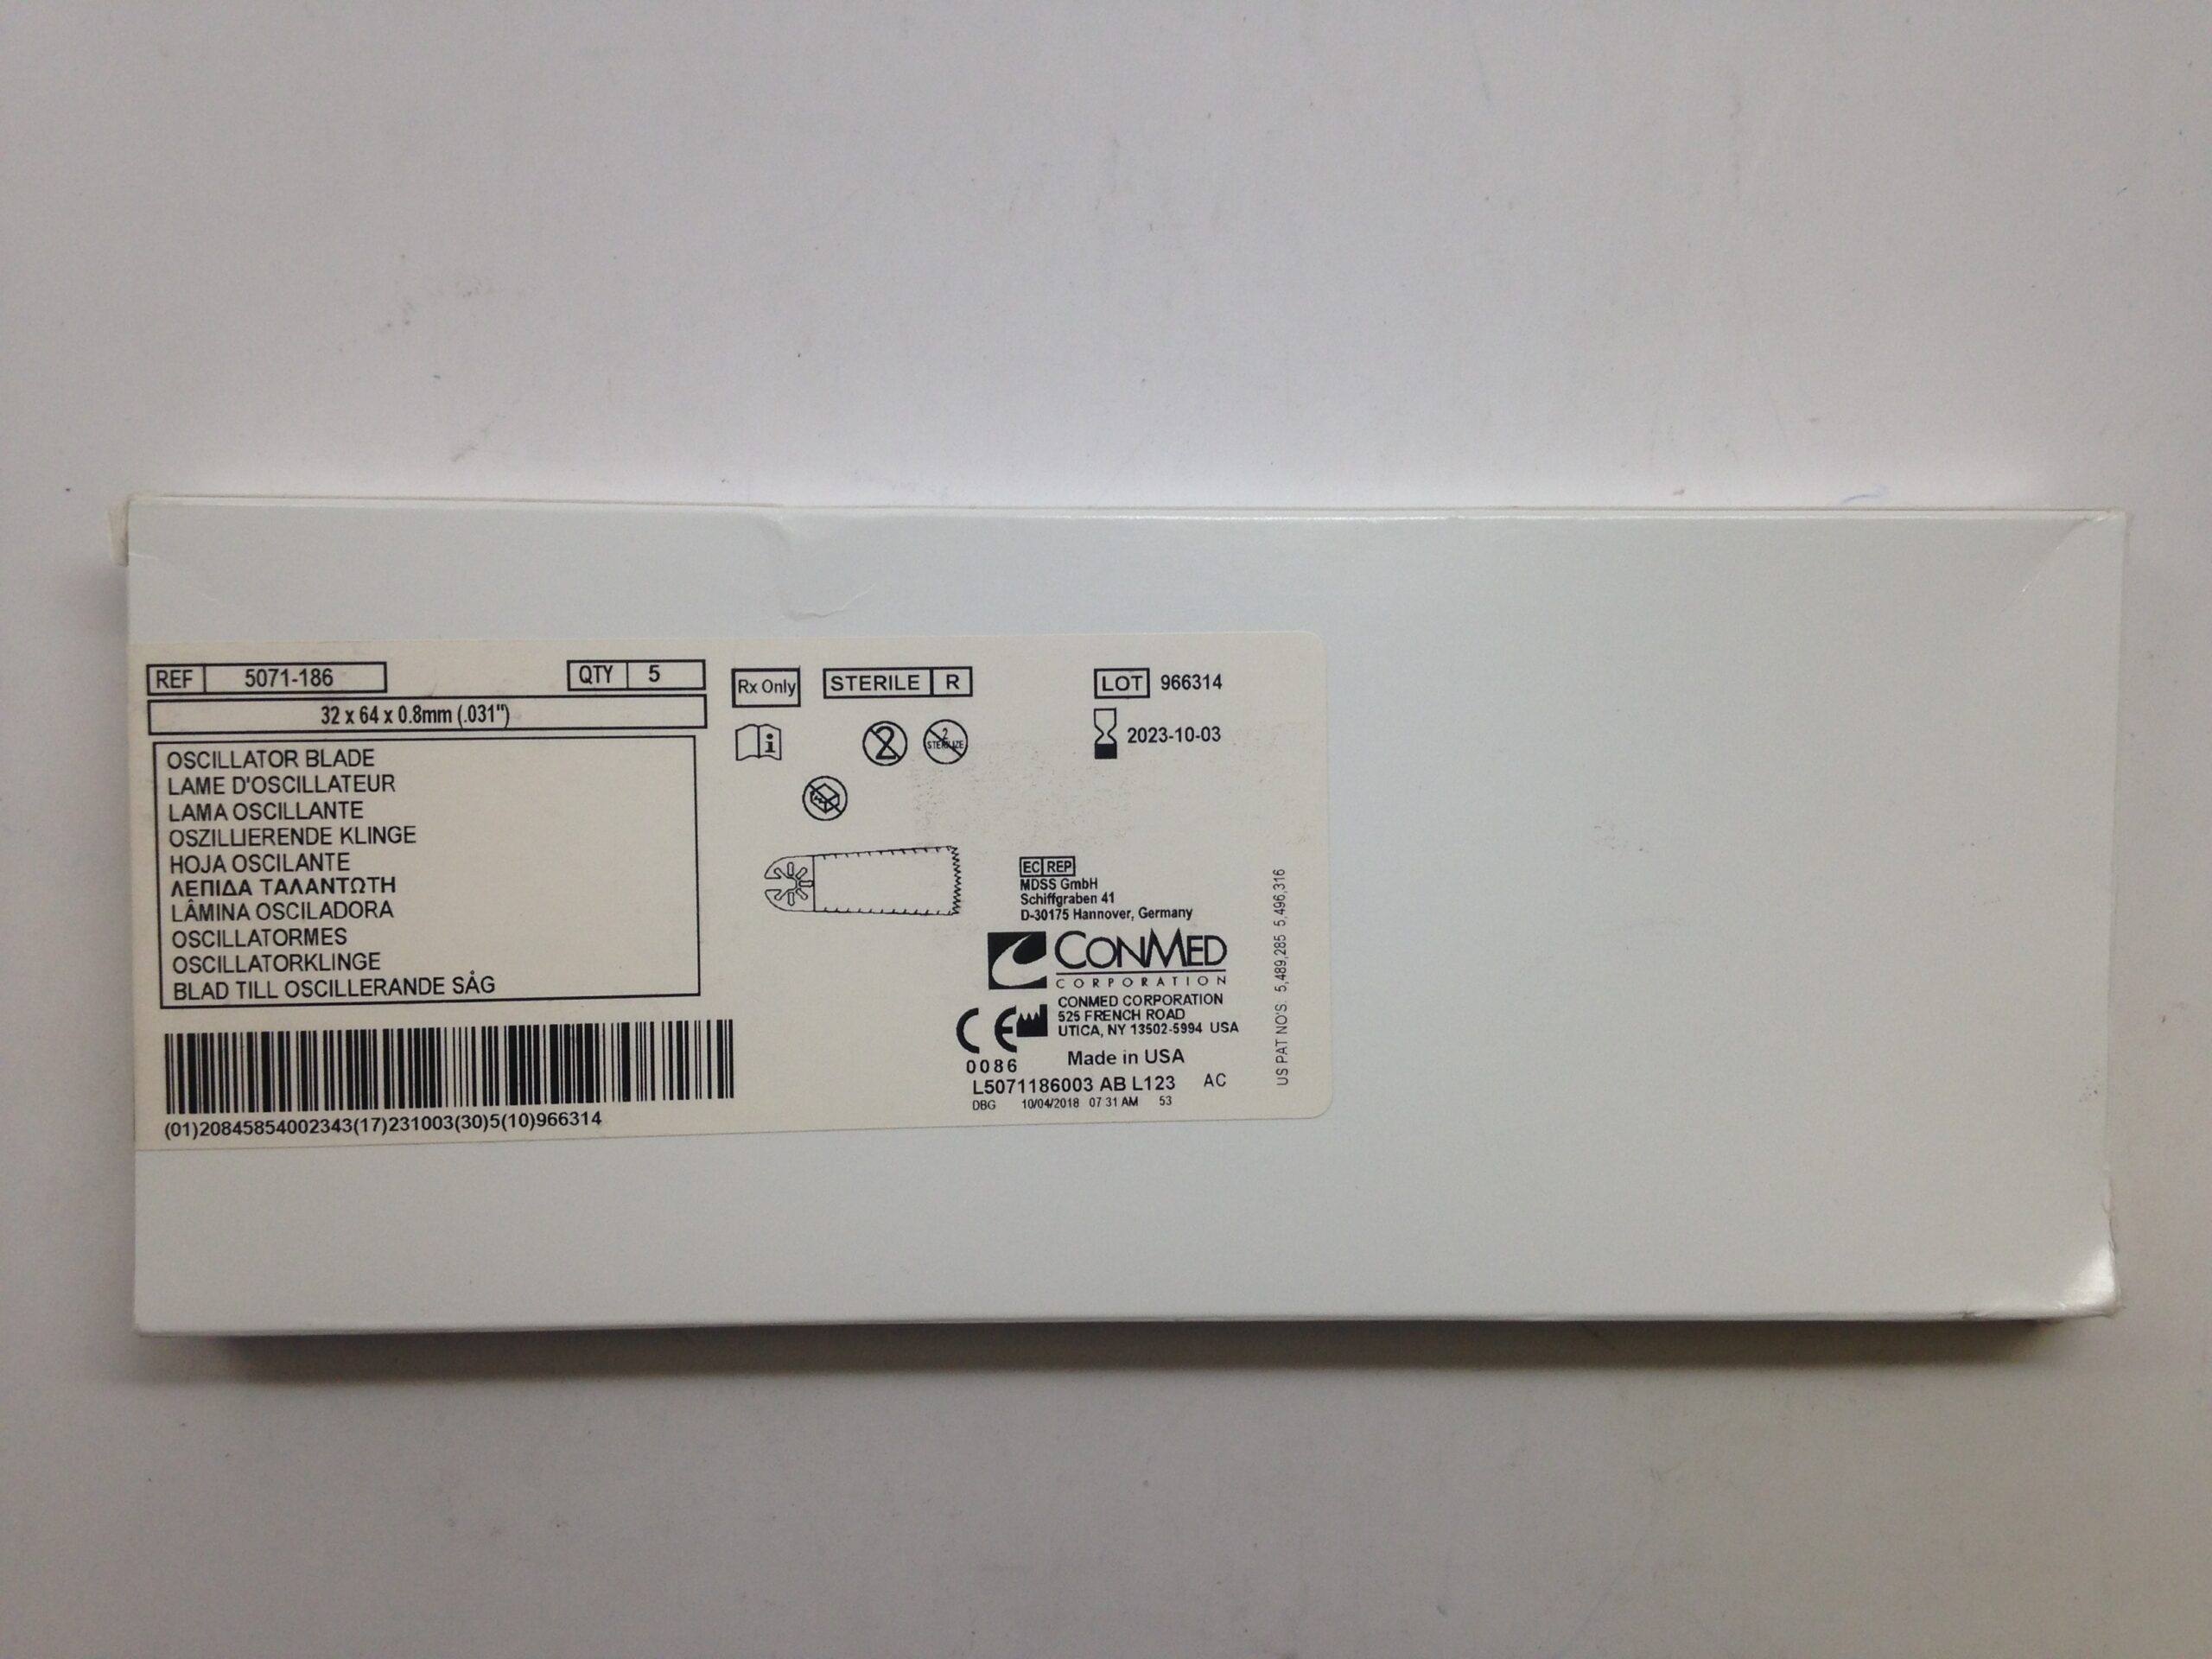 CONMED 5091-128 Round Bur, Medium, Carbide, 4mm (X) – GB TECH USA